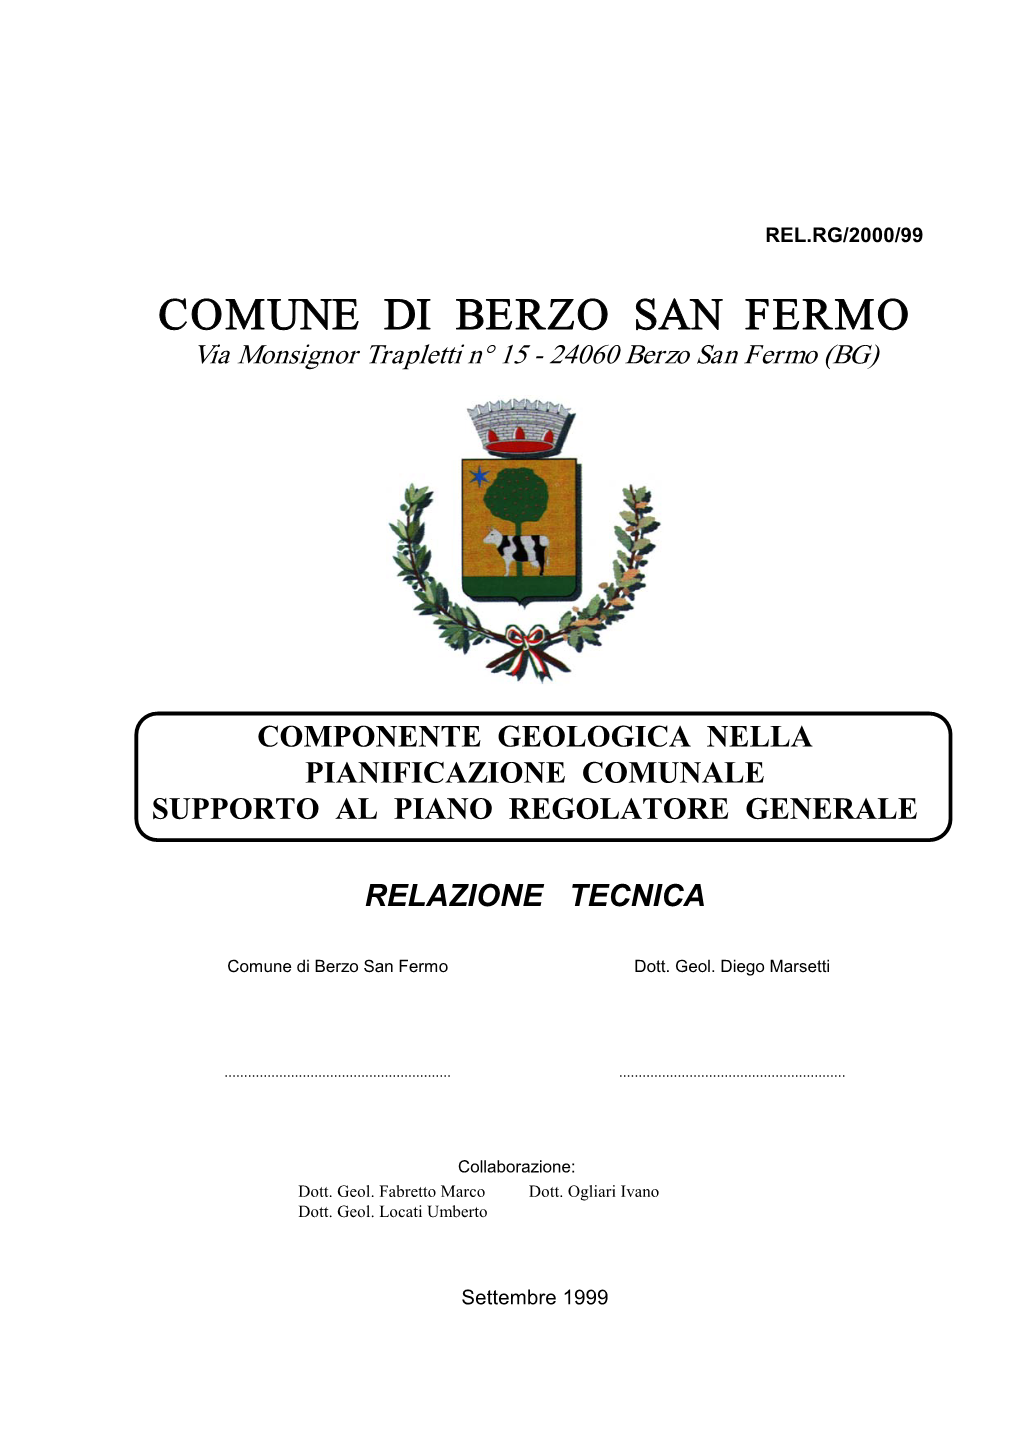 COMUNE DI BERZO SAN FERMO Via Monsignor Trapletti N° 15 - 24060 Berzo San Fermo (BG)